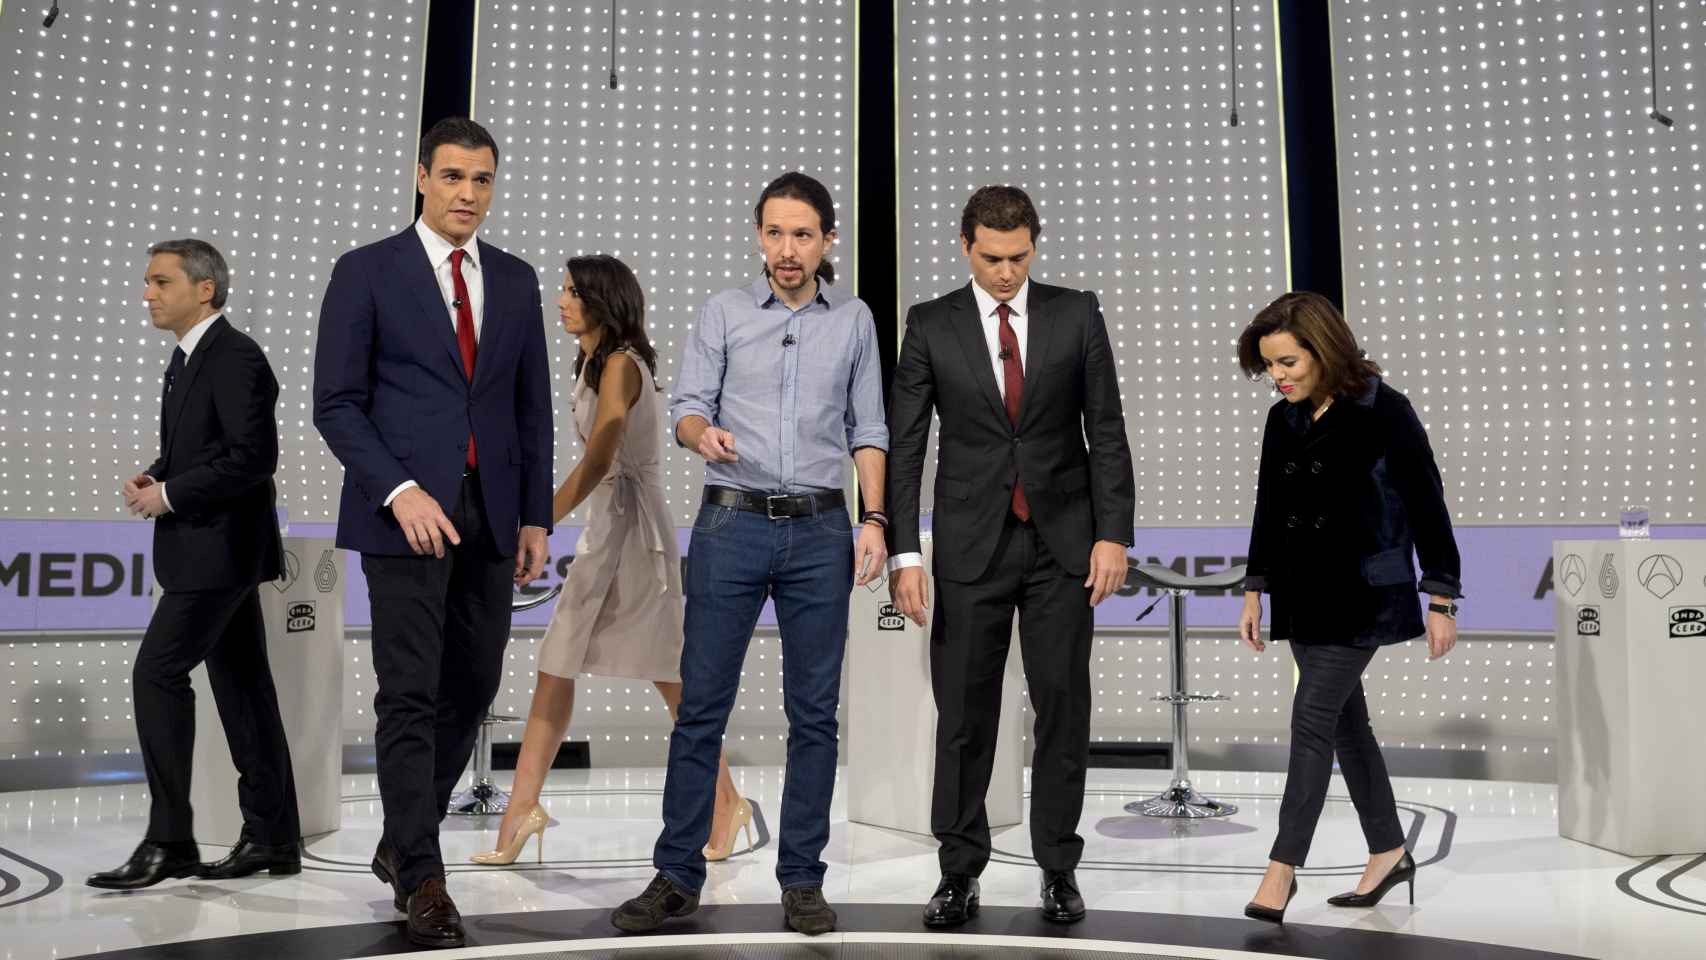 Imagen del debate a cuatro de 2015 en el que Rajoy, entonces presidente, no quiso participar.